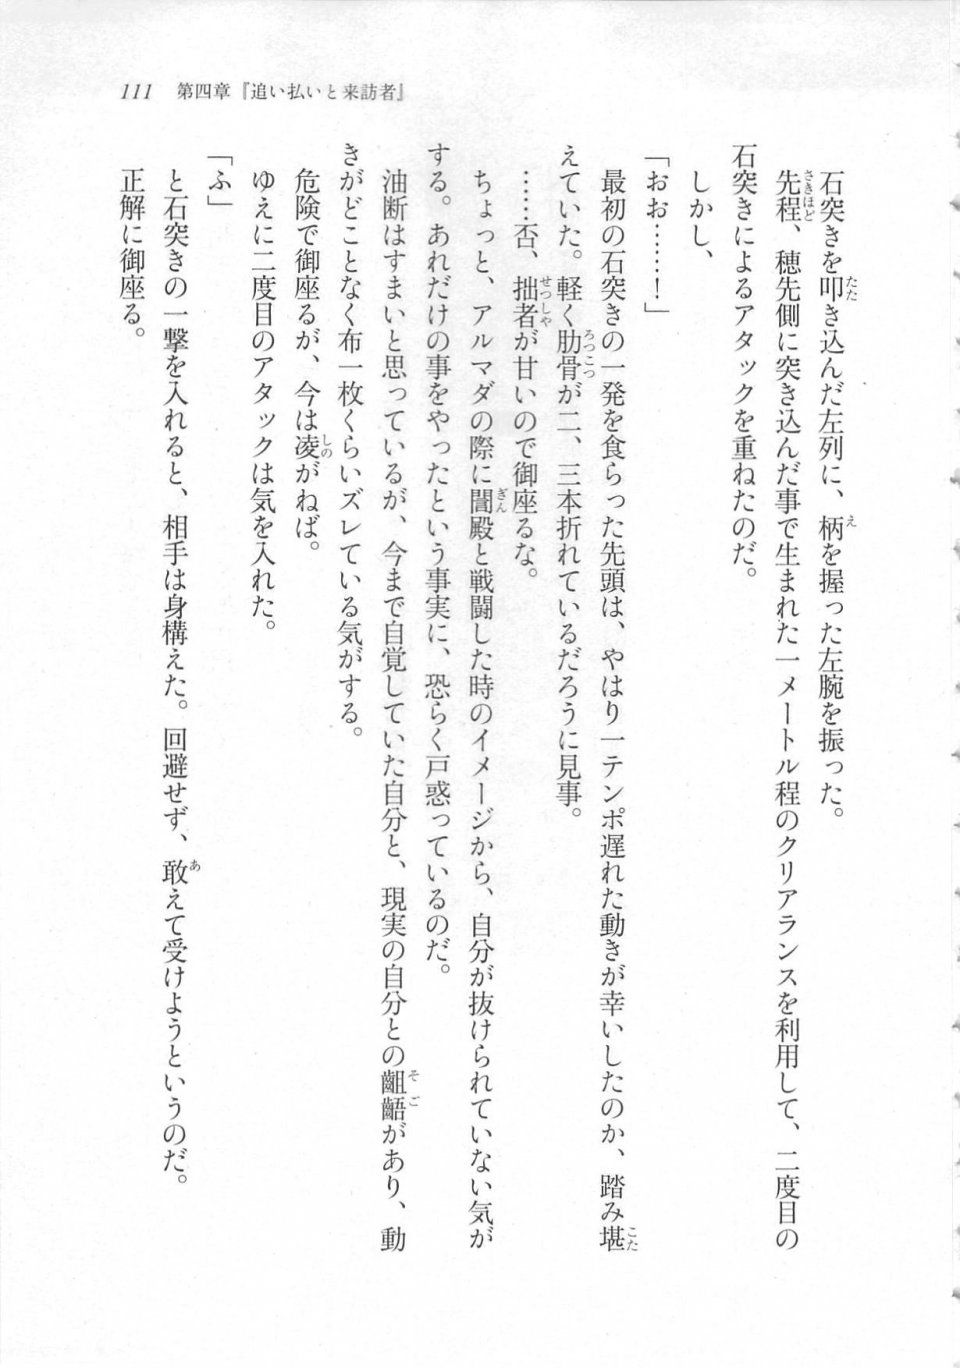 Kyoukai Senjou no Horizon LN Sidestory Vol 3 - Photo #115